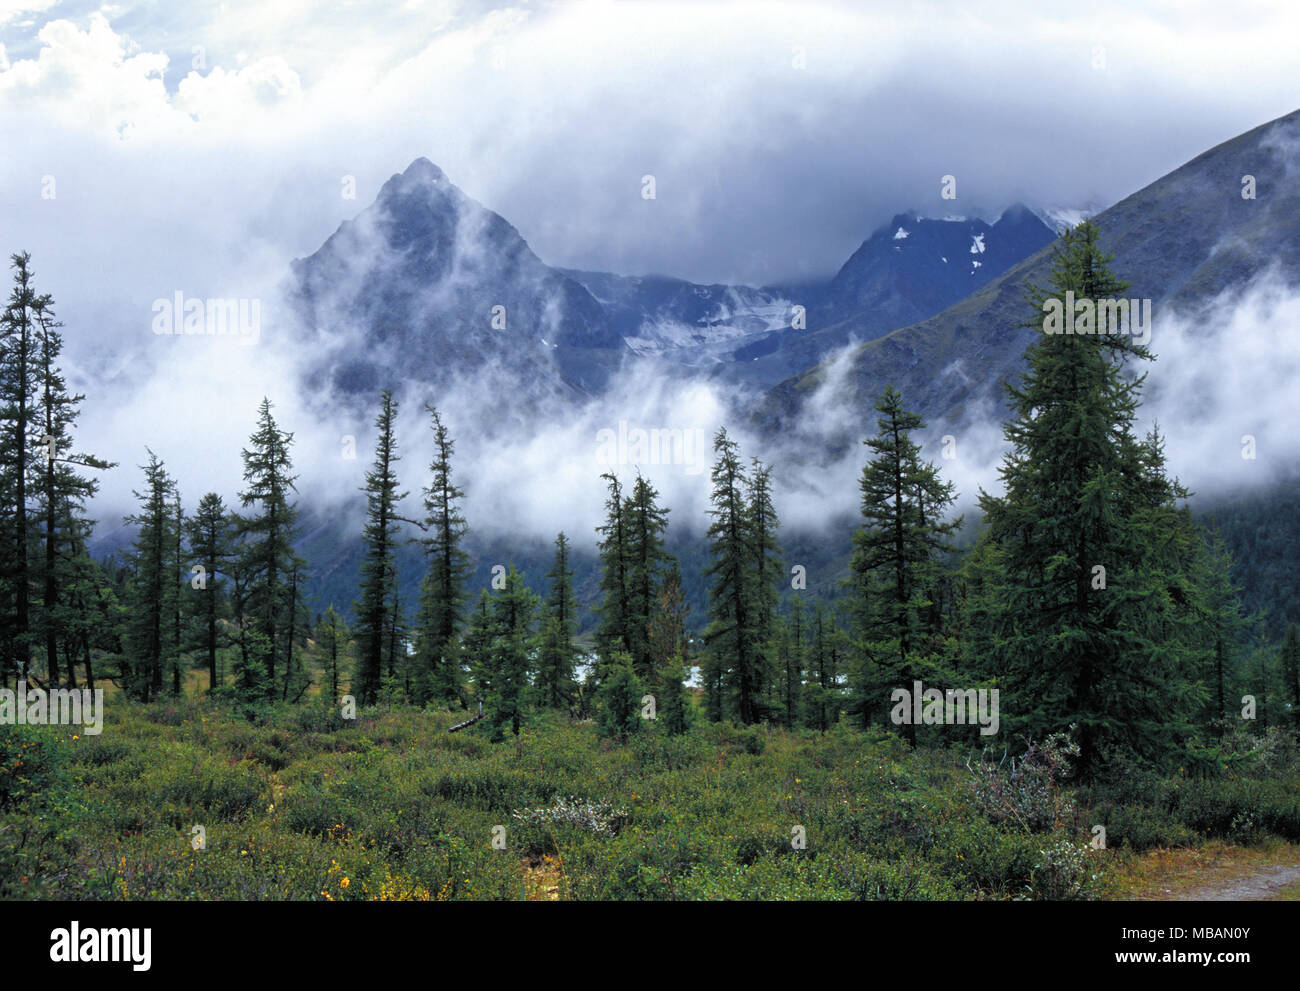 Ak-kem valle en las montañas de Altai, las nubes bajas detrás de los abetos delgado Foto de stock